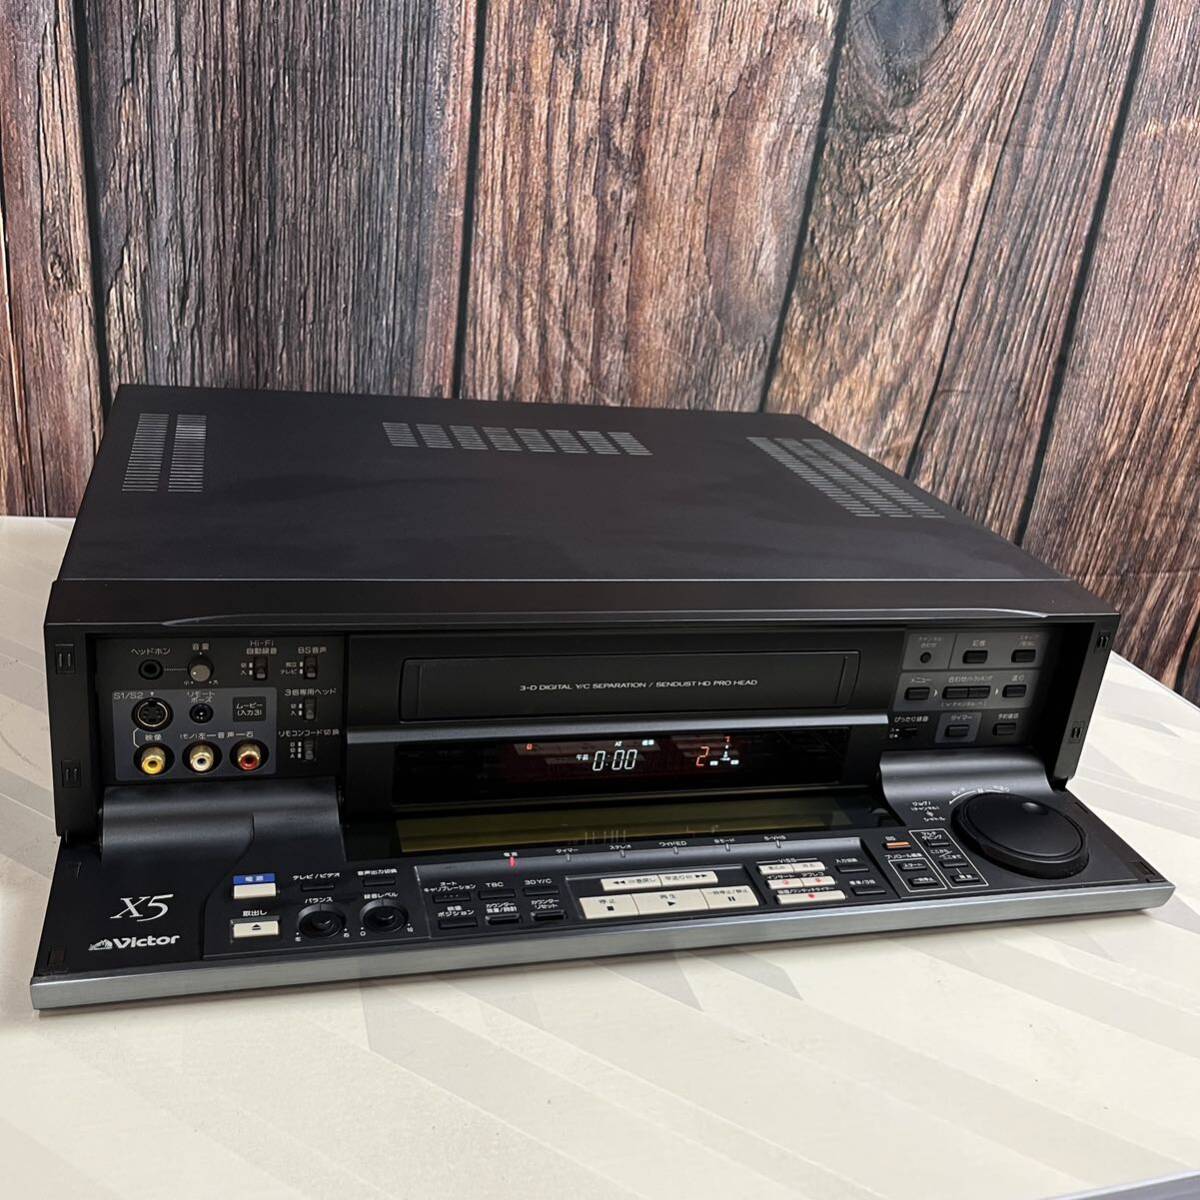 Victor HR-X5 ビクター S-VHSデッキ 629デジタルTBC搭載 ビデオカセットレコーダーの画像1